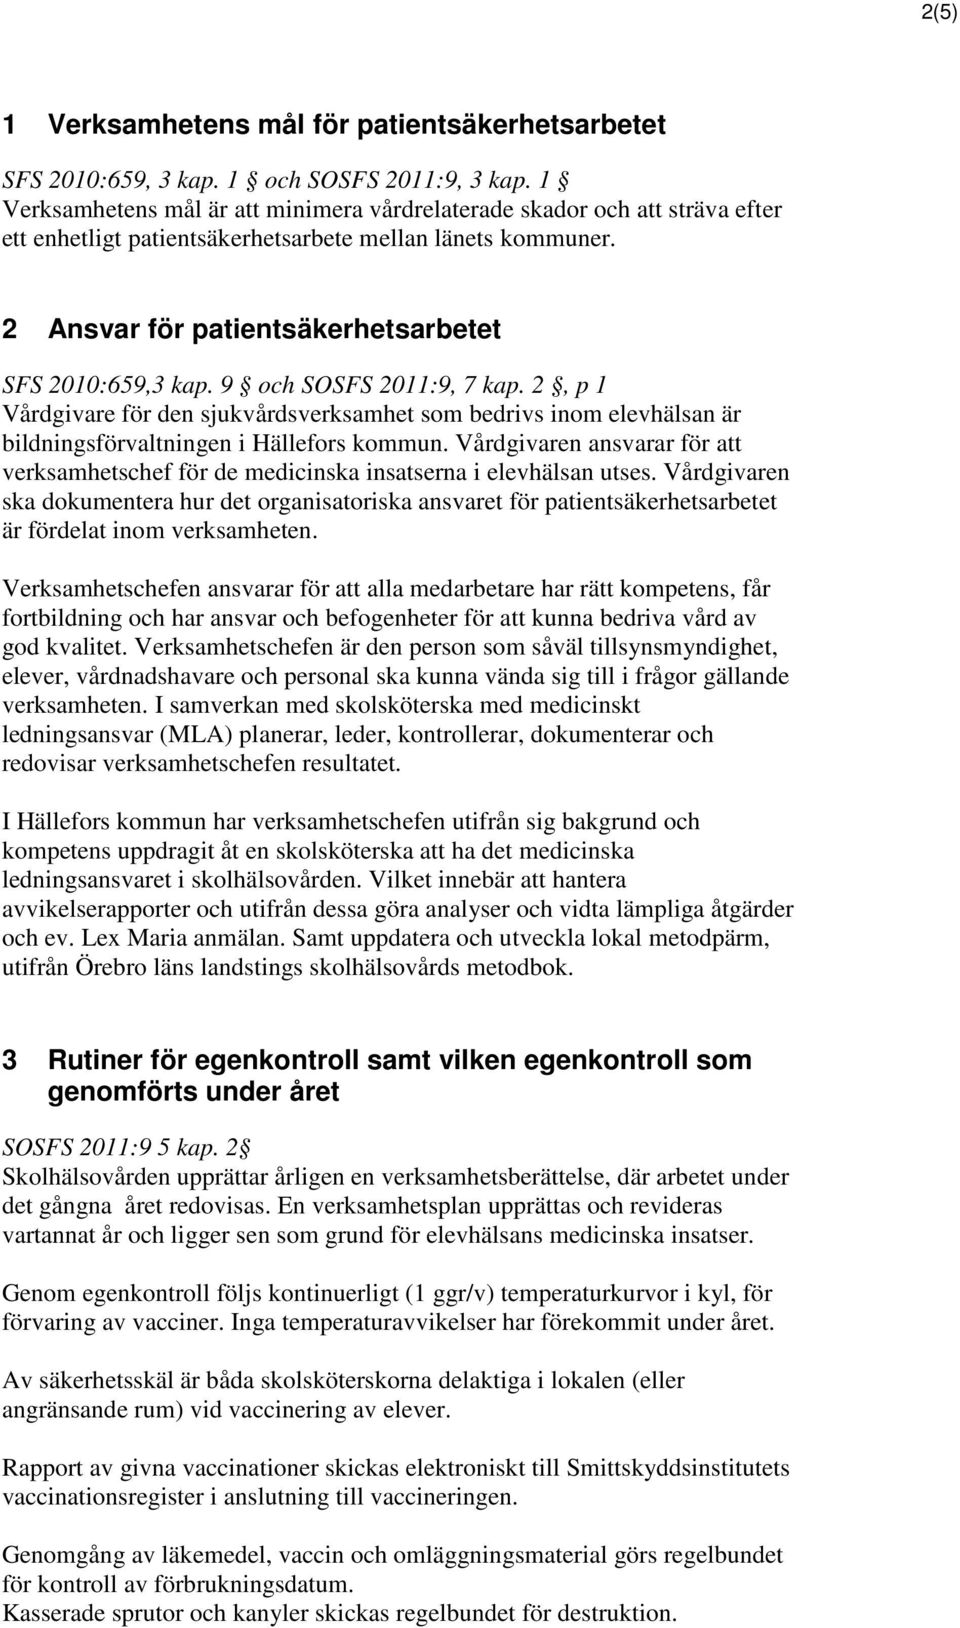 9 och SOSFS 2011:9, 7 kap. 2, p 1 Vårdgivare för den sjukvårdsverksamhet som bedrivs inom elevhälsan är bildningsförvaltningen i Hällefors kommun.